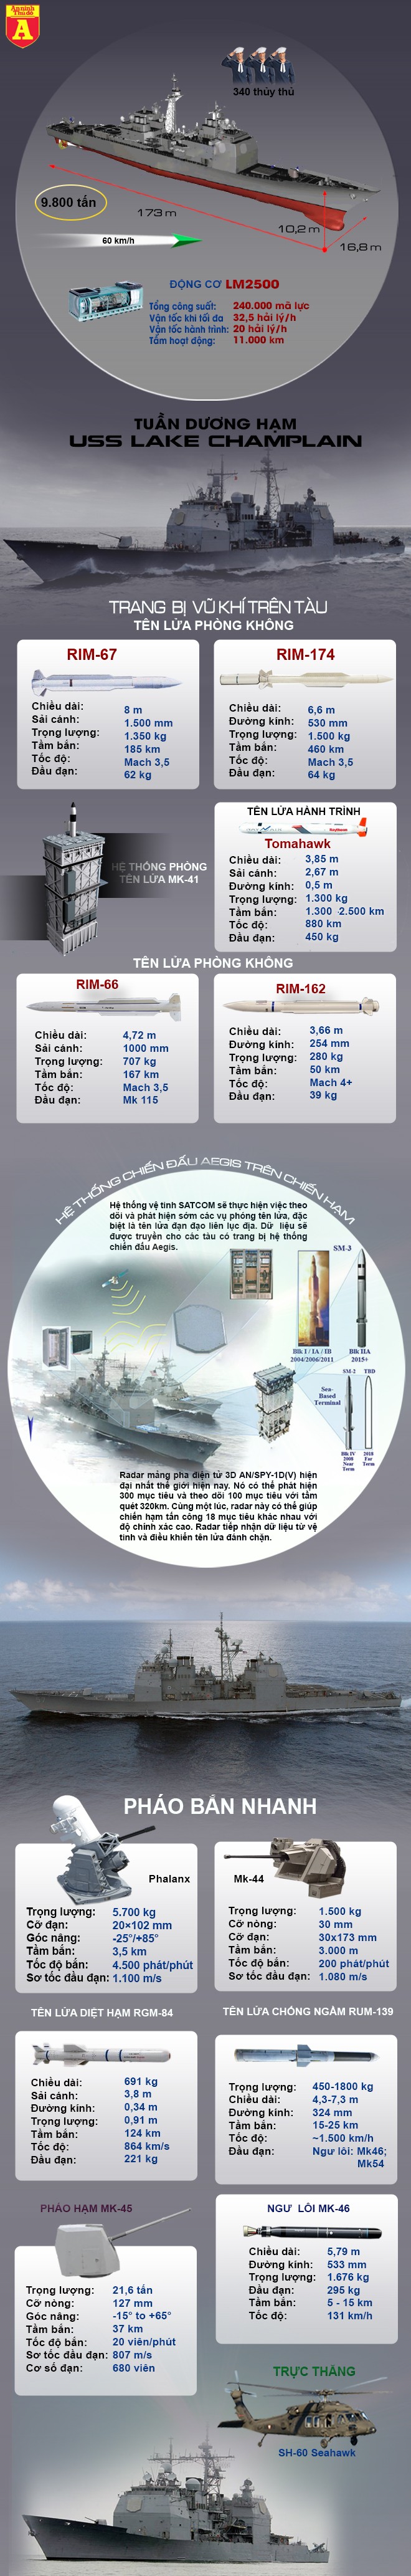 [Infographic] Sức mạnh kinh hoàng của tuần dương hạm Mỹ tới Việt Nam ảnh 2